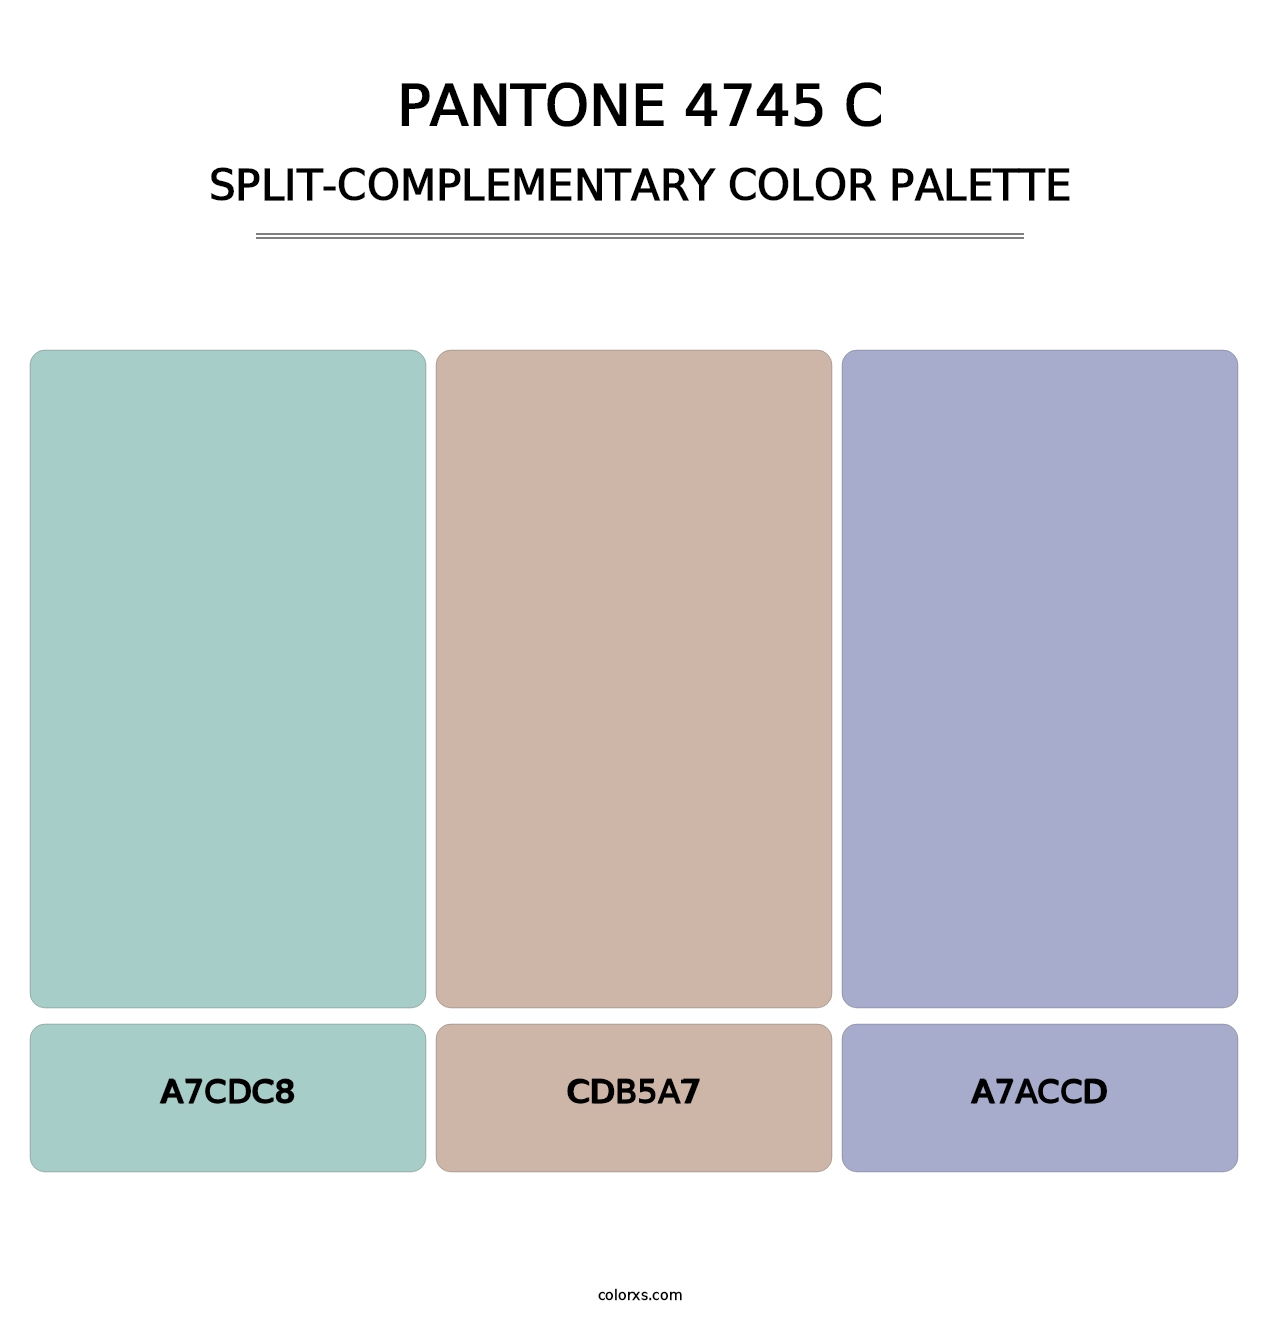 PANTONE 4745 C - Split-Complementary Color Palette